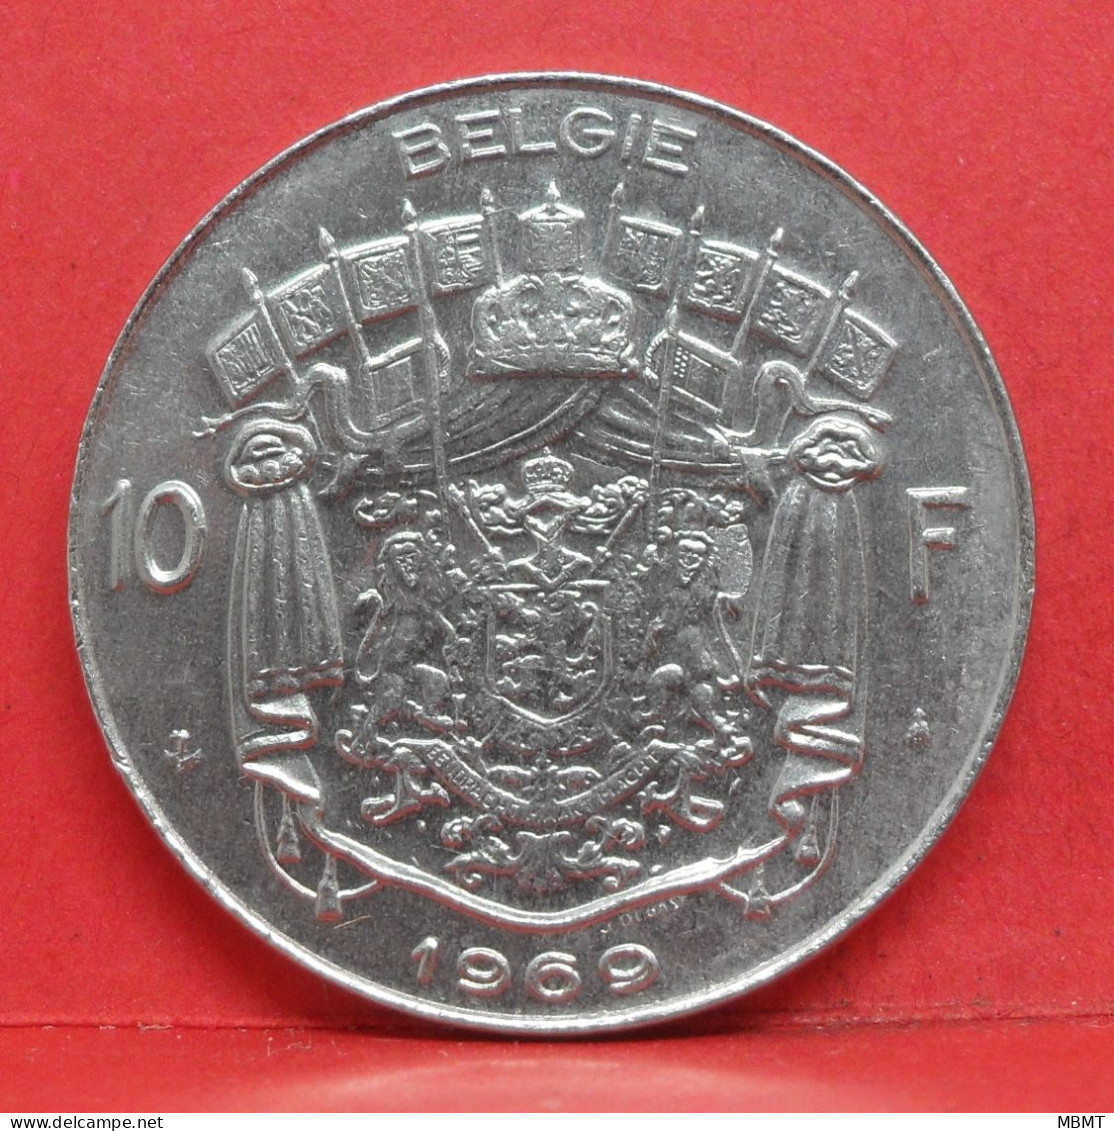 10 Frank 1969 - SUP - Pièce Monnaie Belgie - Article N°2010 - 10 Francs